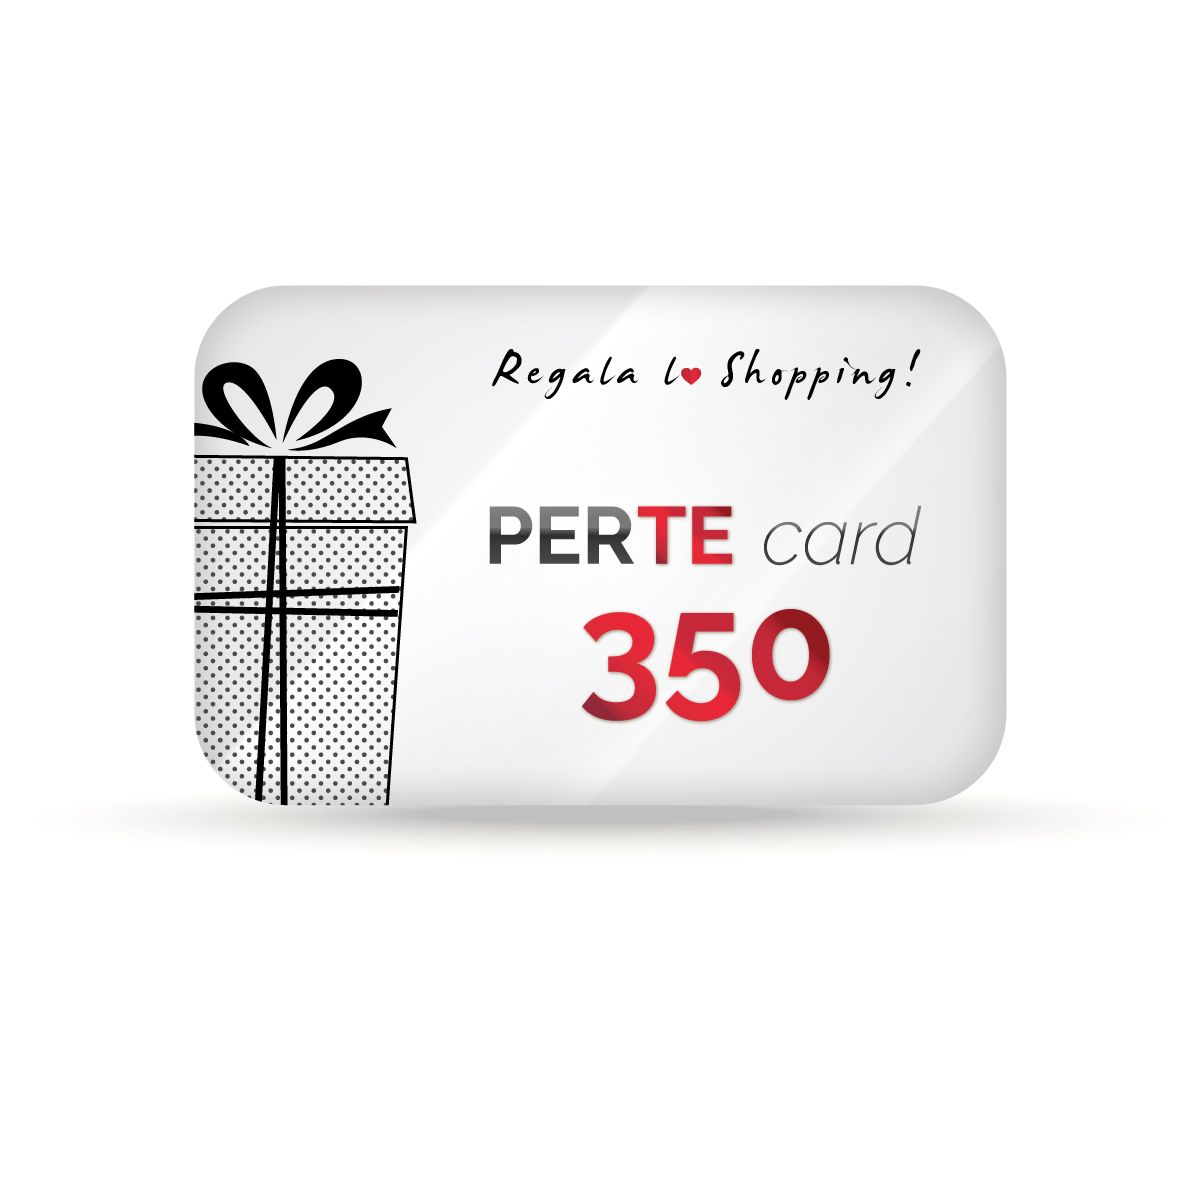 PERTE Card 350